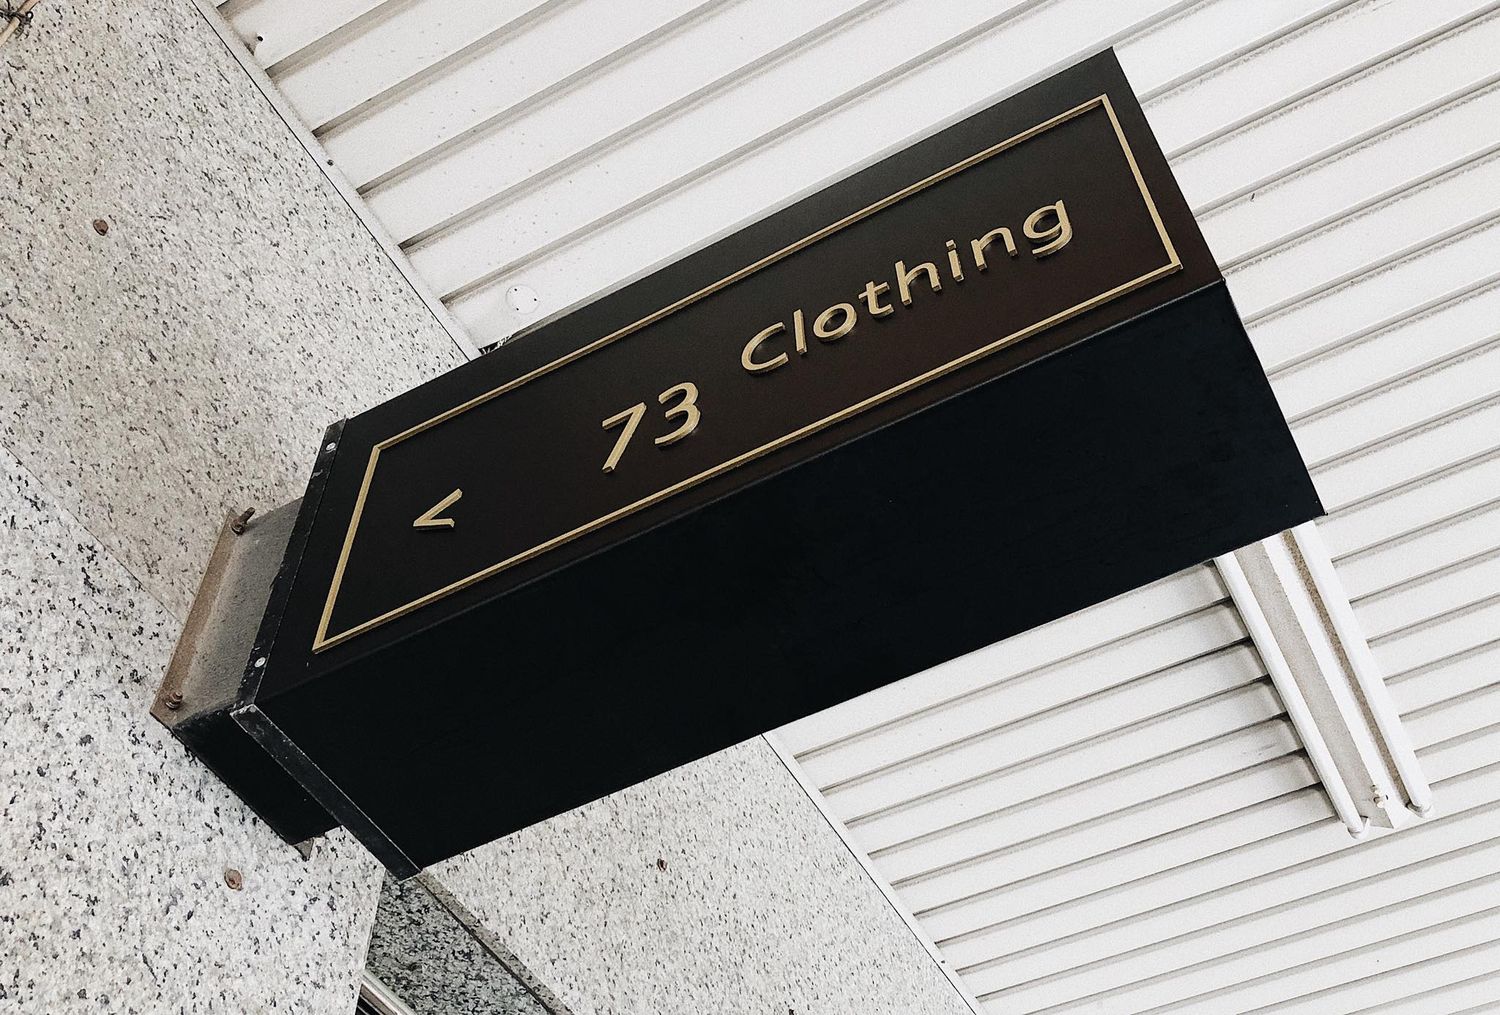 73 Clothing - 「73 Clothing 璽兒」